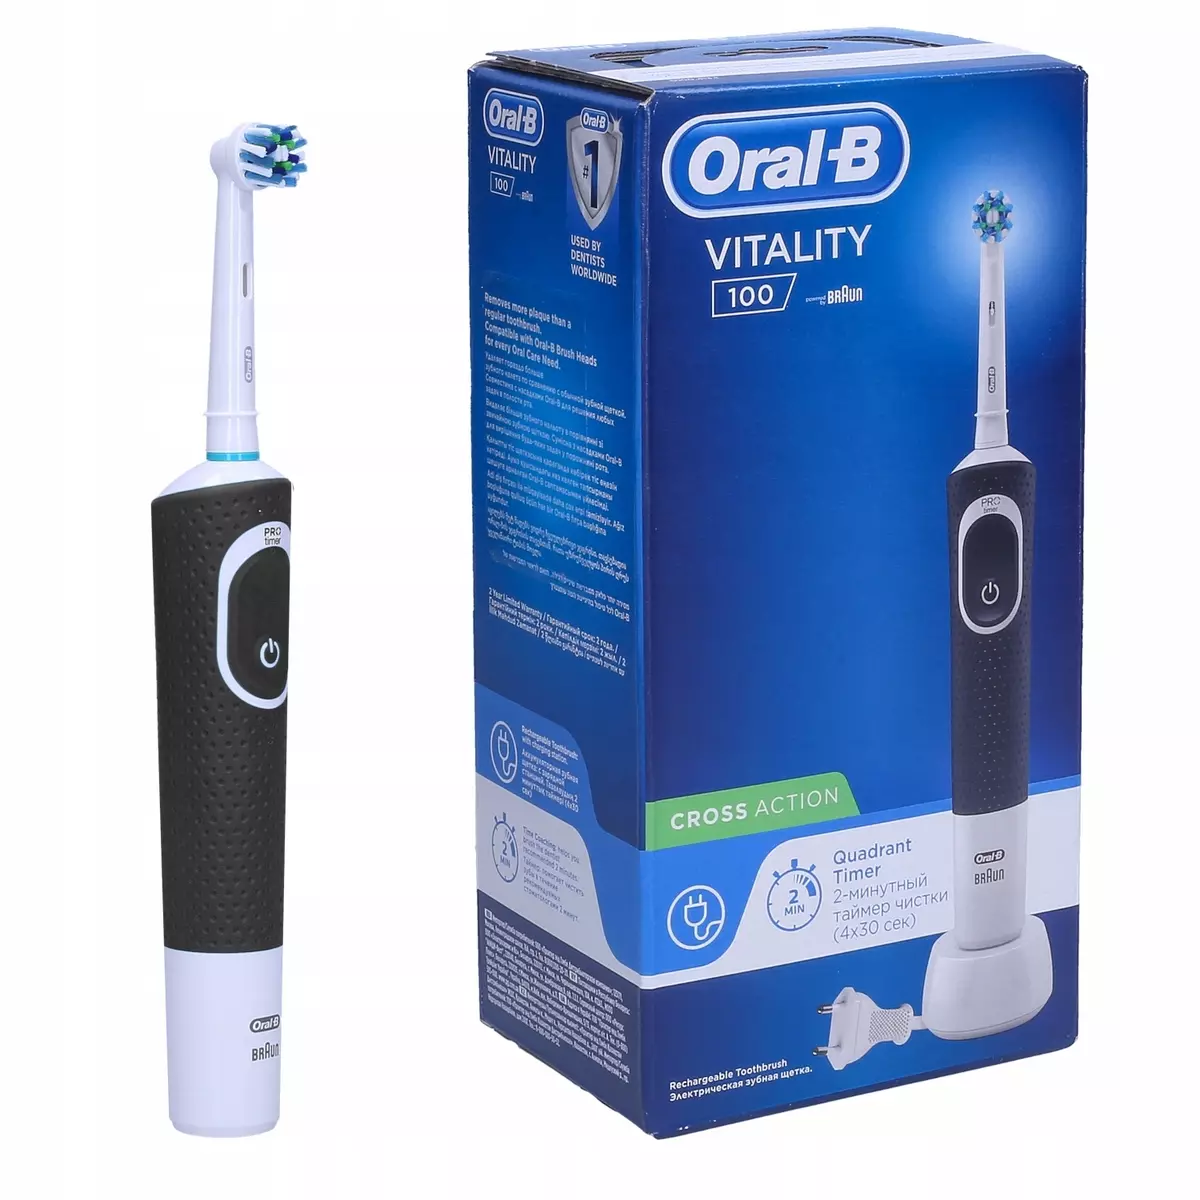 Elektraj dentbrosoj ORAL-B: Vitality kaj Pro 500, Crossaction kaj 3D White, Smart 4 kaj aliaj branĉaj elektrolatoj. Kiel elekti? Recenzoj 16159_28